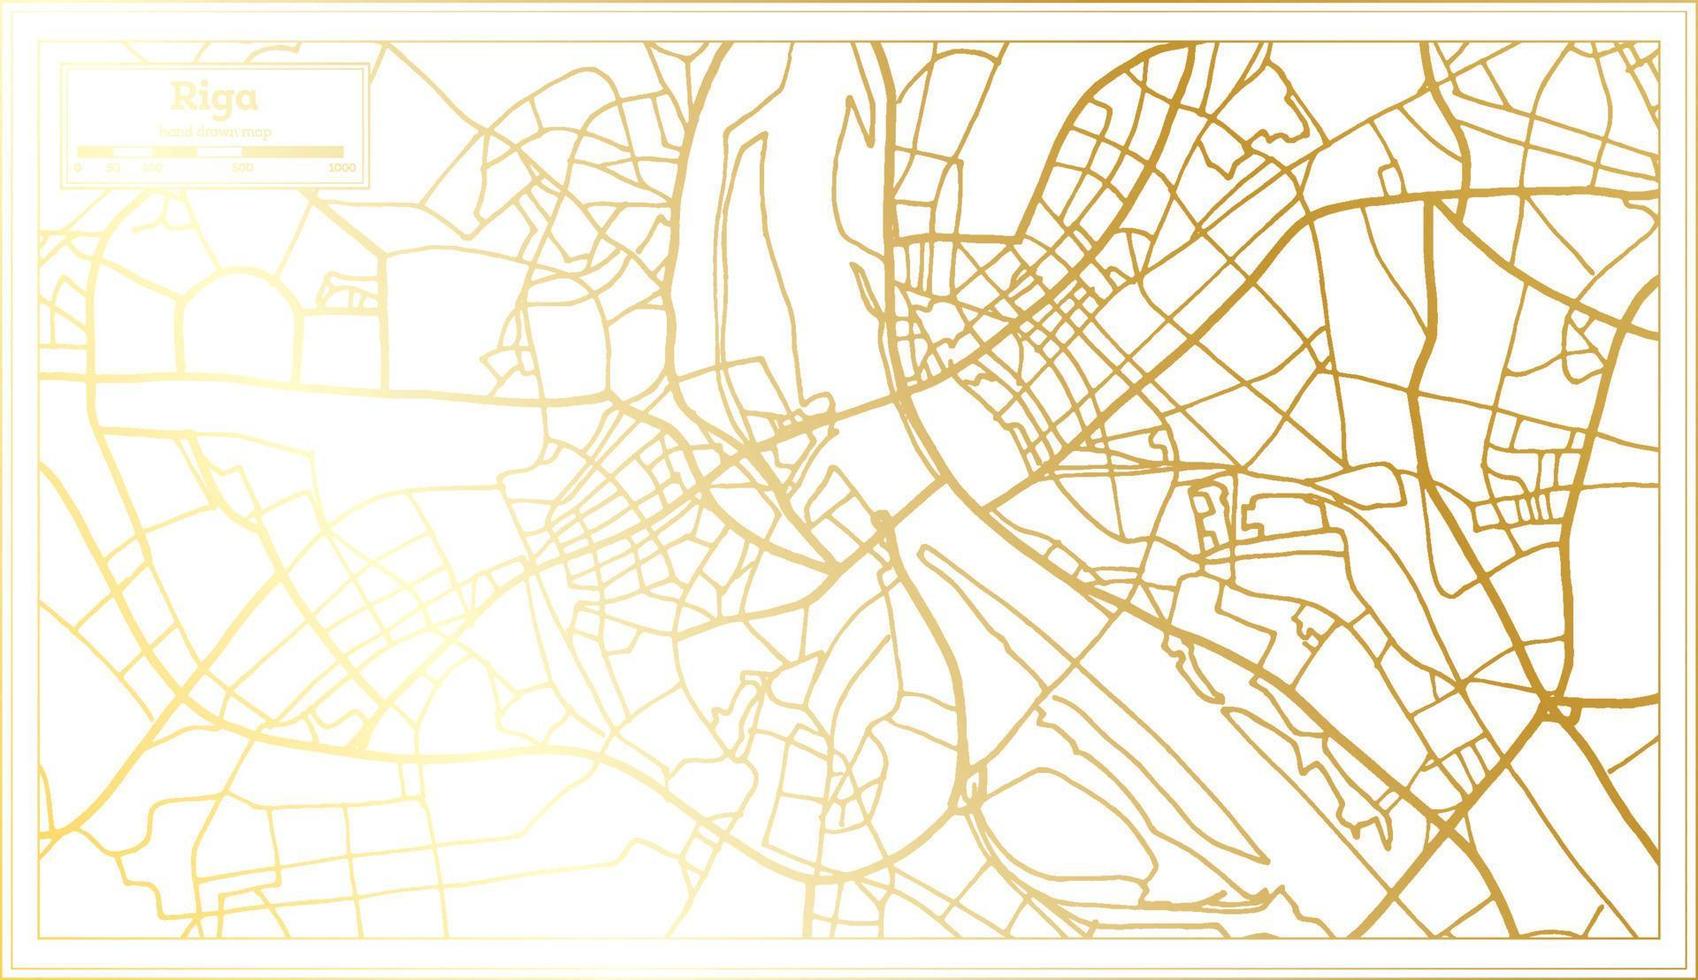 Riga Letland stad kaart in retro stijl in gouden kleur. schets kaart. vector